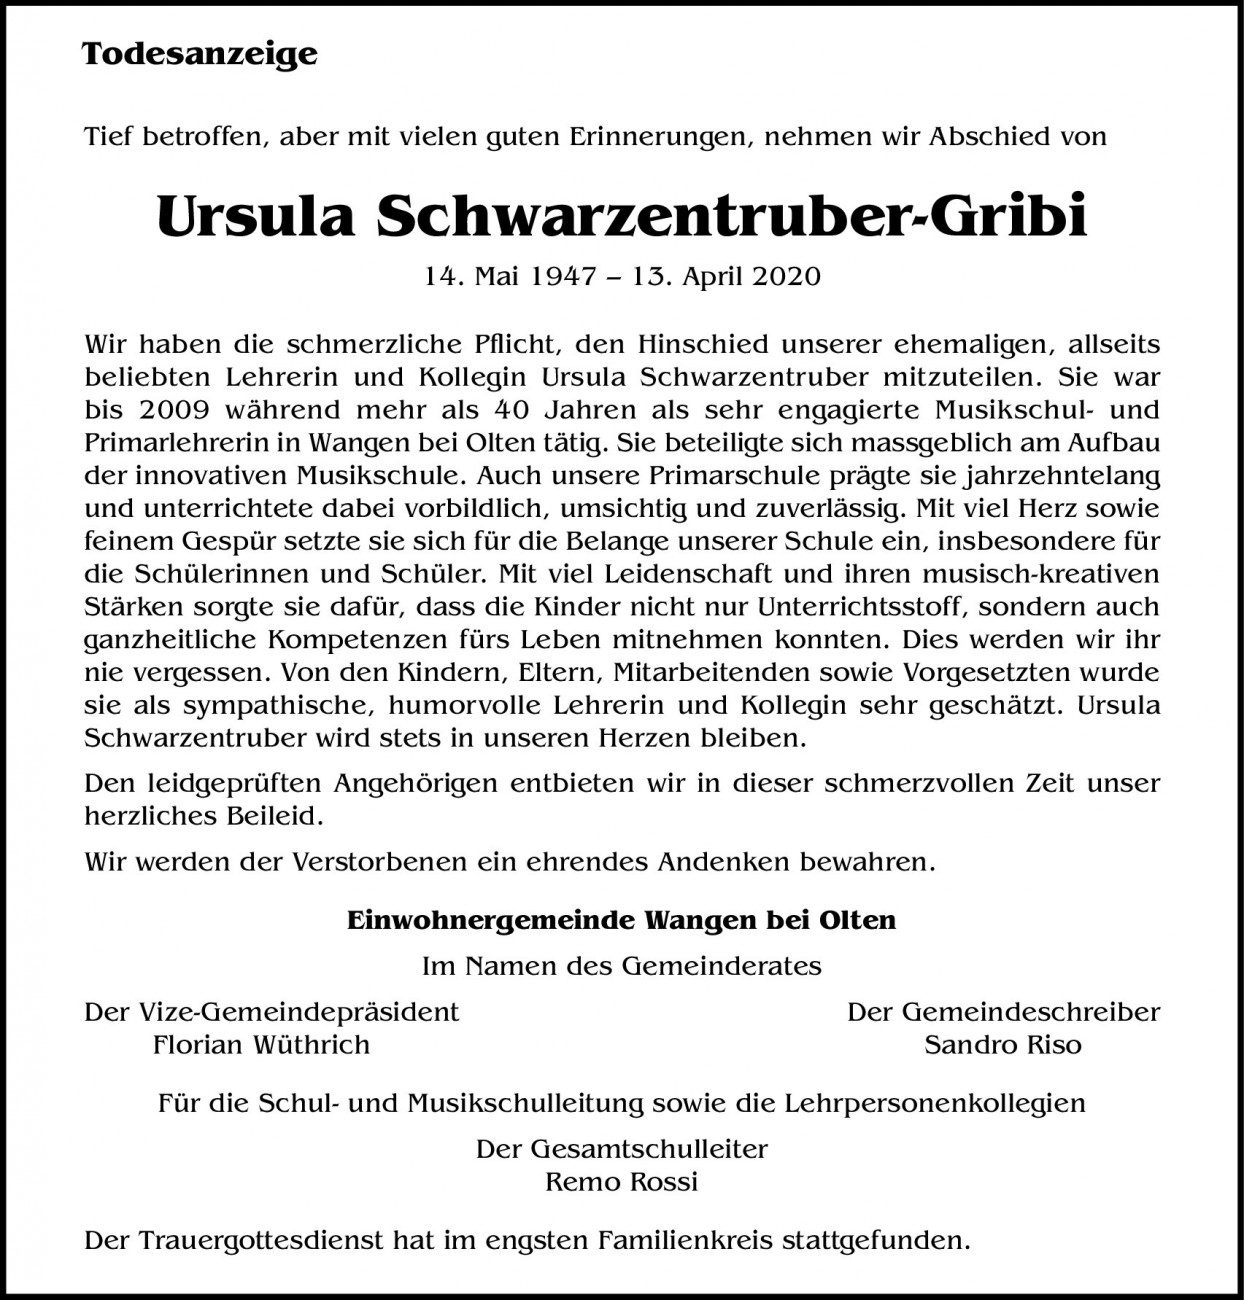 Ursula Schwarzentruber-Gribi